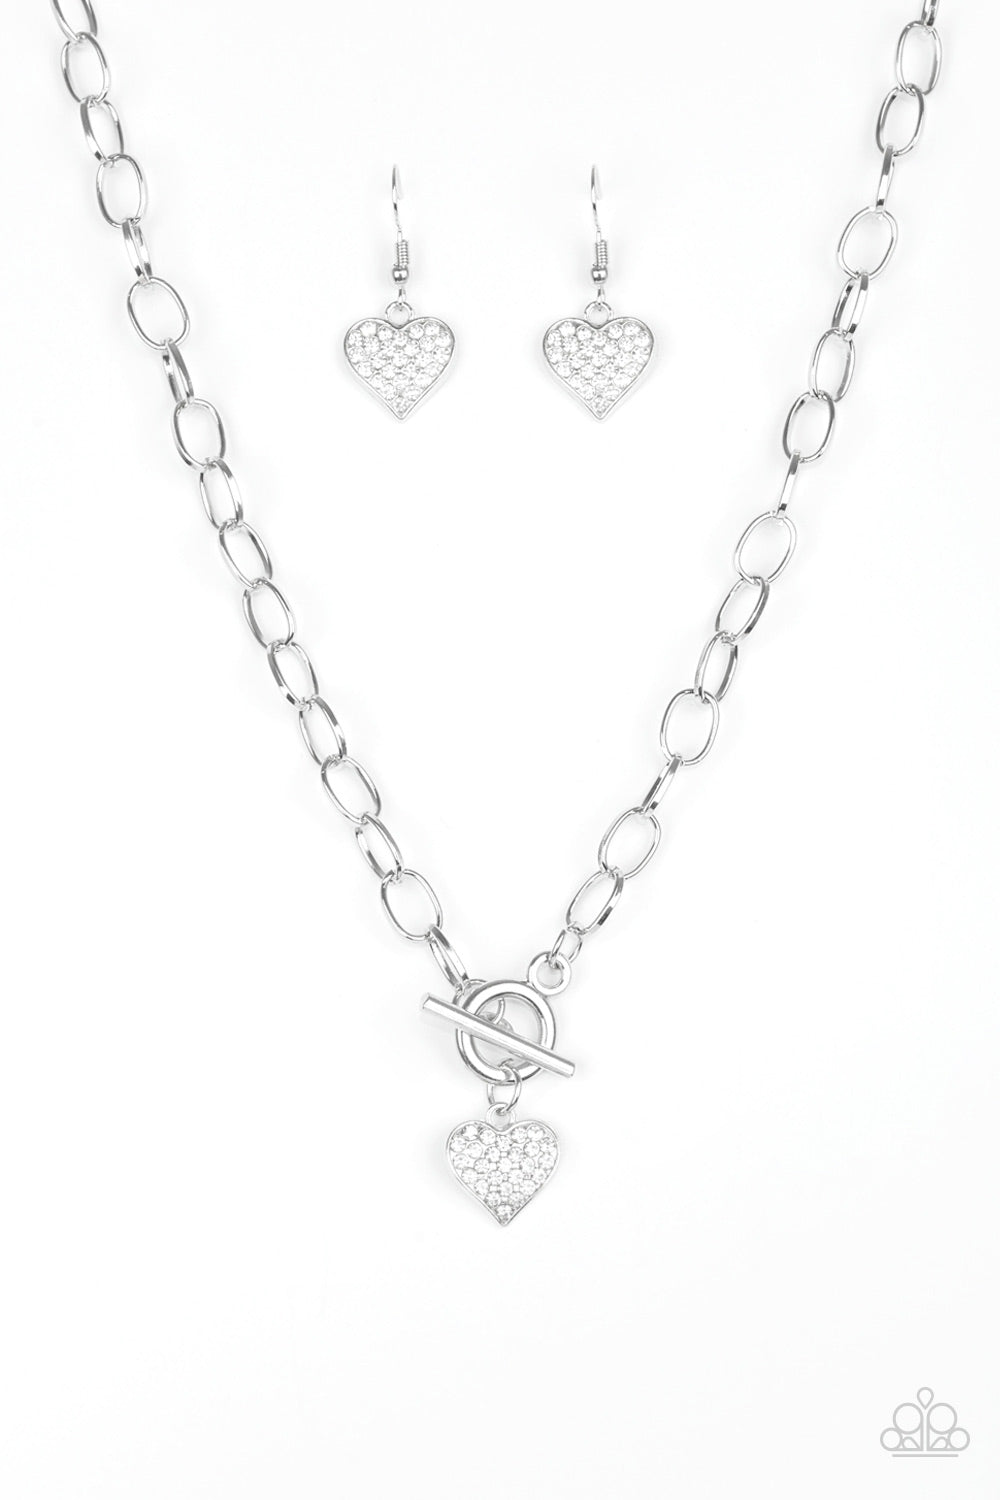 Harvard Hearts - White rhinestones heart shaped necklace